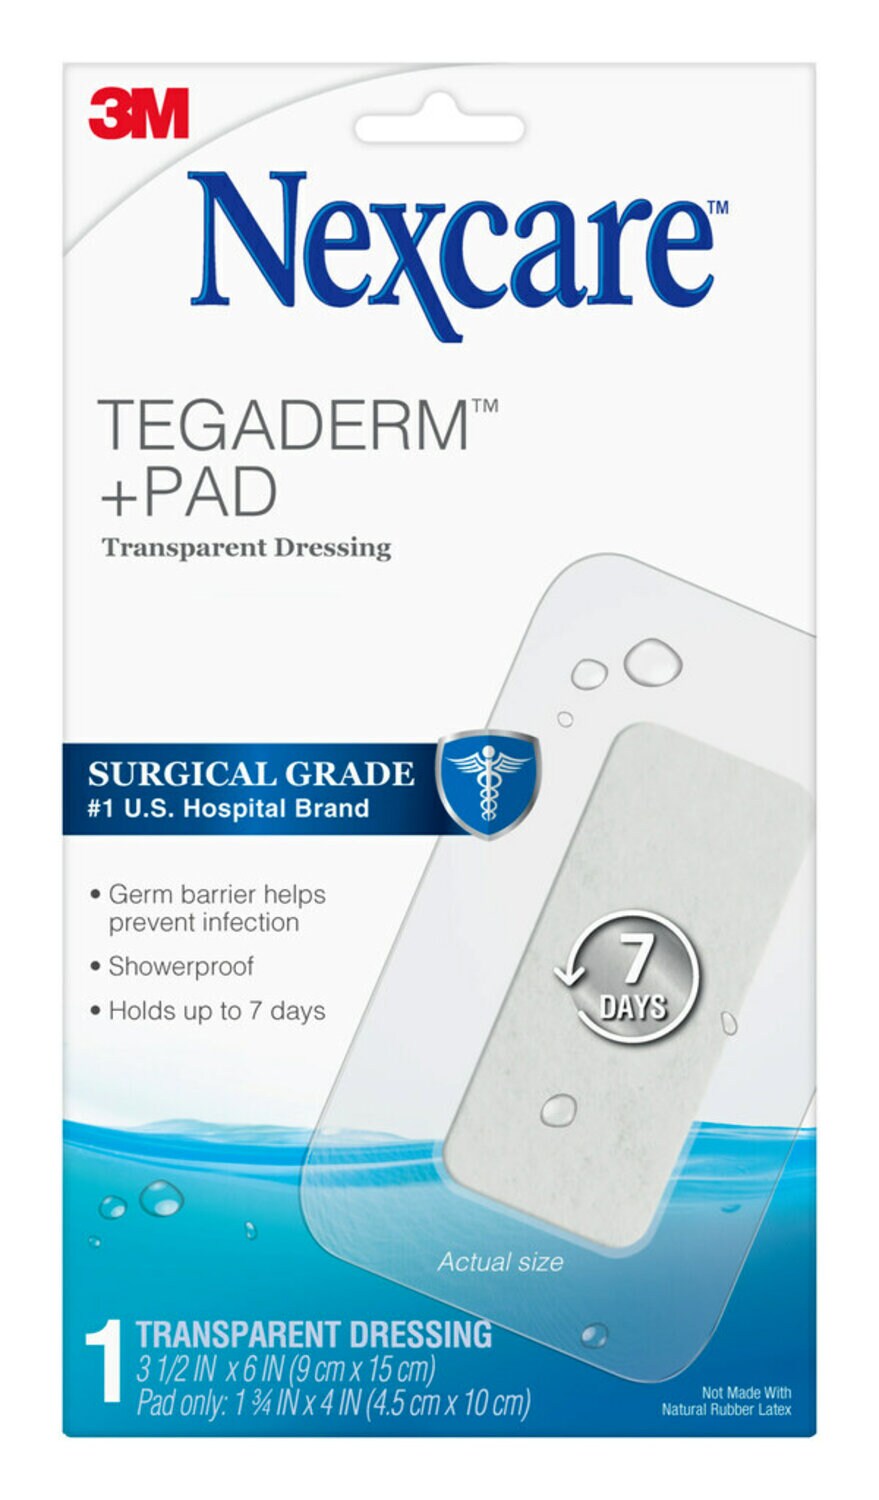 7100282641 - Nexcare Tegaderm + Pad Transparent Dressing W3589, 3 1/2 in x 6 in (9 cm x 15 cm)